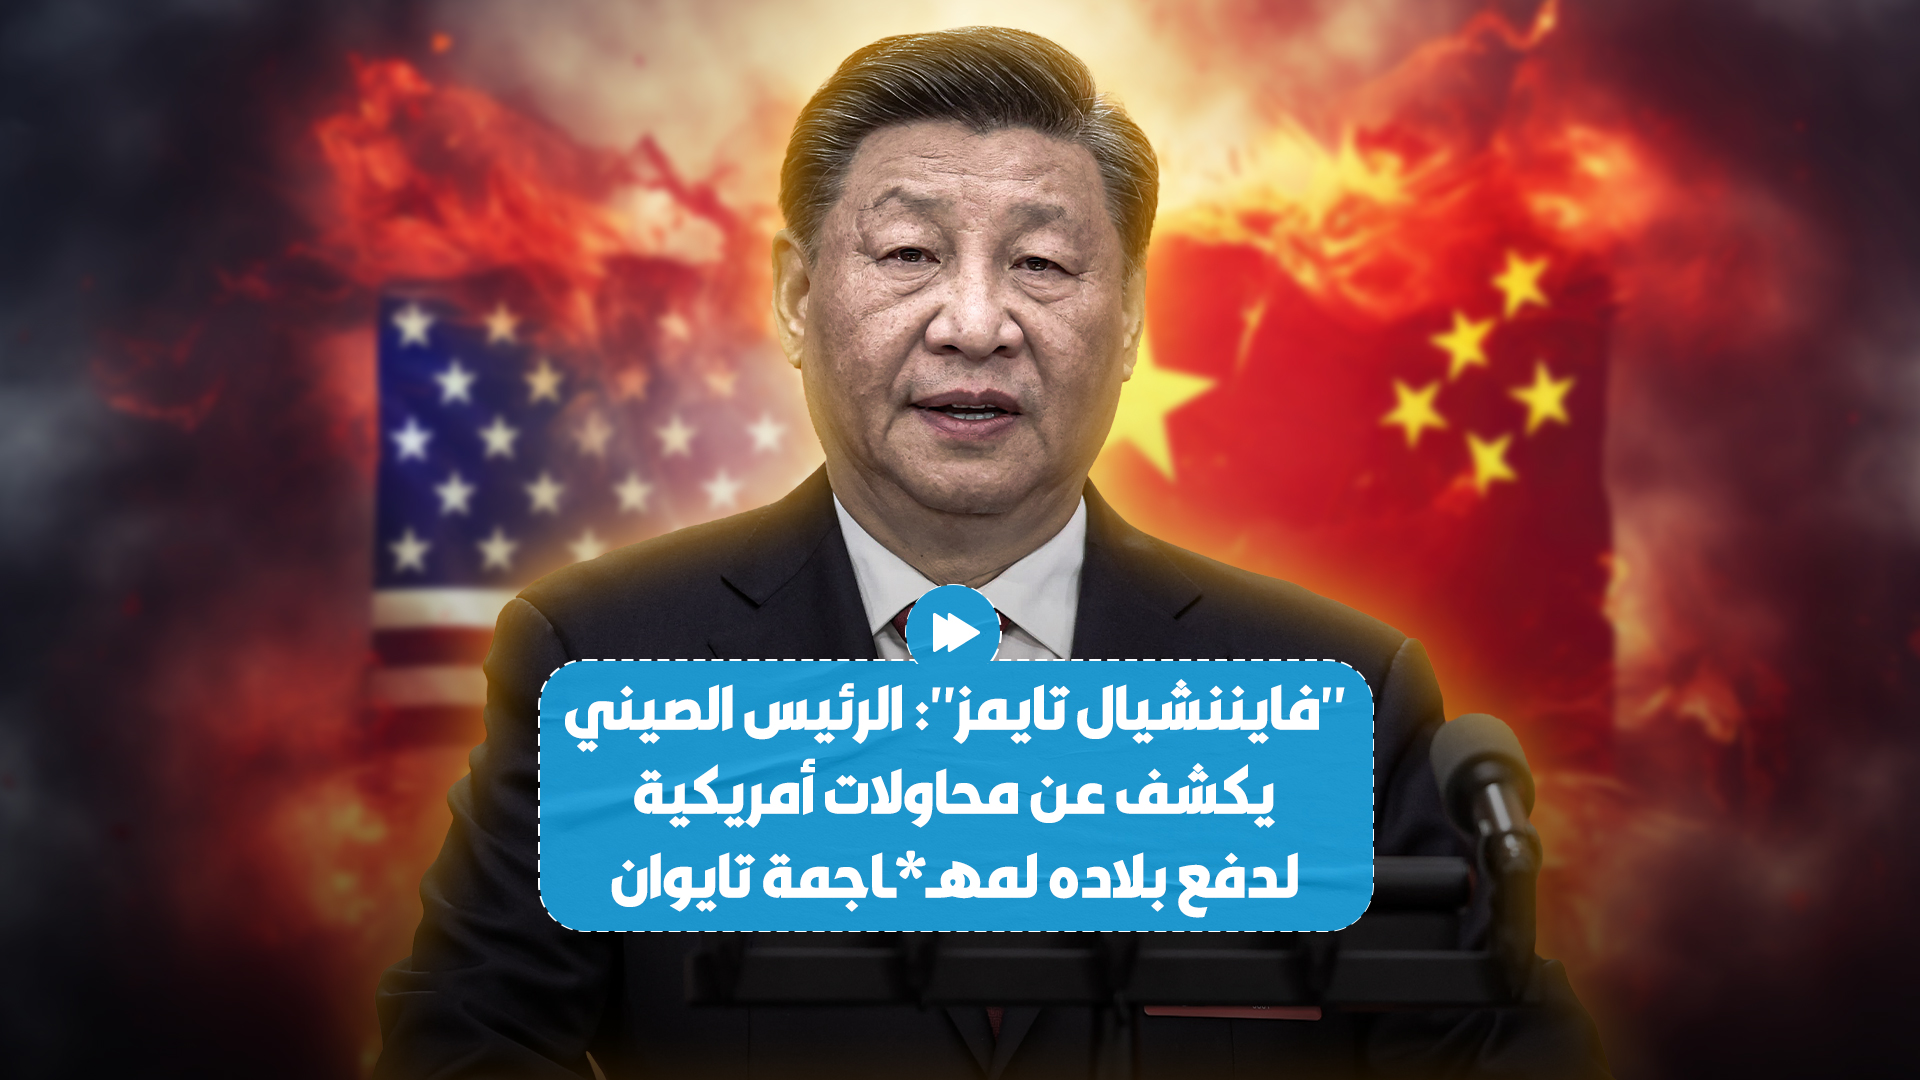 صحيفة بريطانية تكشف أن الرئيس الصيني أبلغ الأوروبيين بأن واشنطن حاولت دفع الصين لمهـ،ـاجمة تايوان